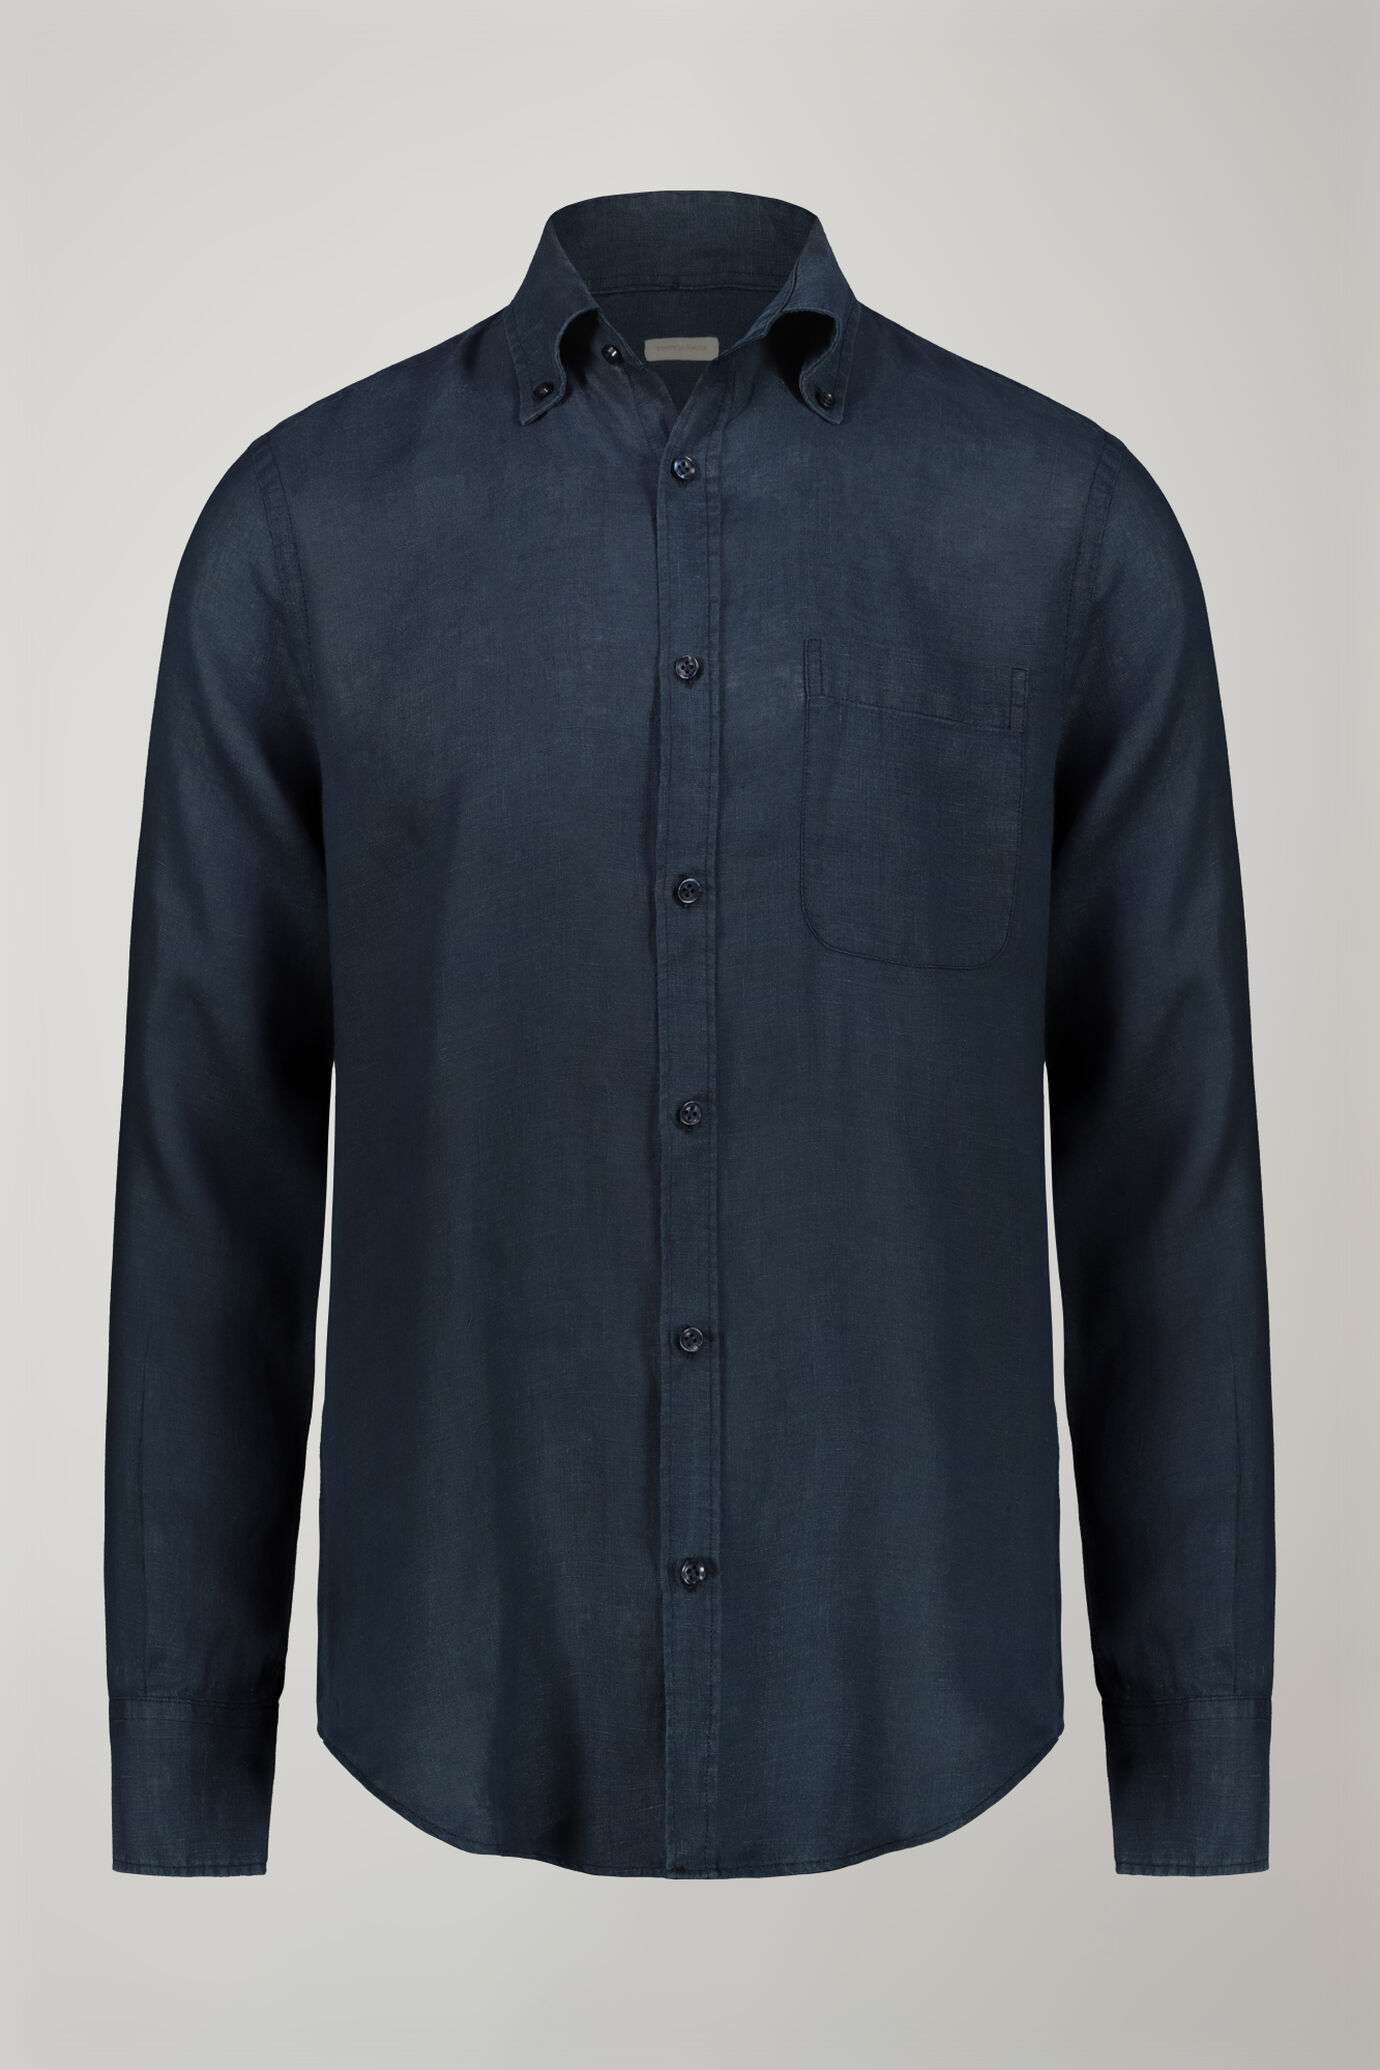 Camicia casual uomo collo button down 100% lino comfort fit image number 5